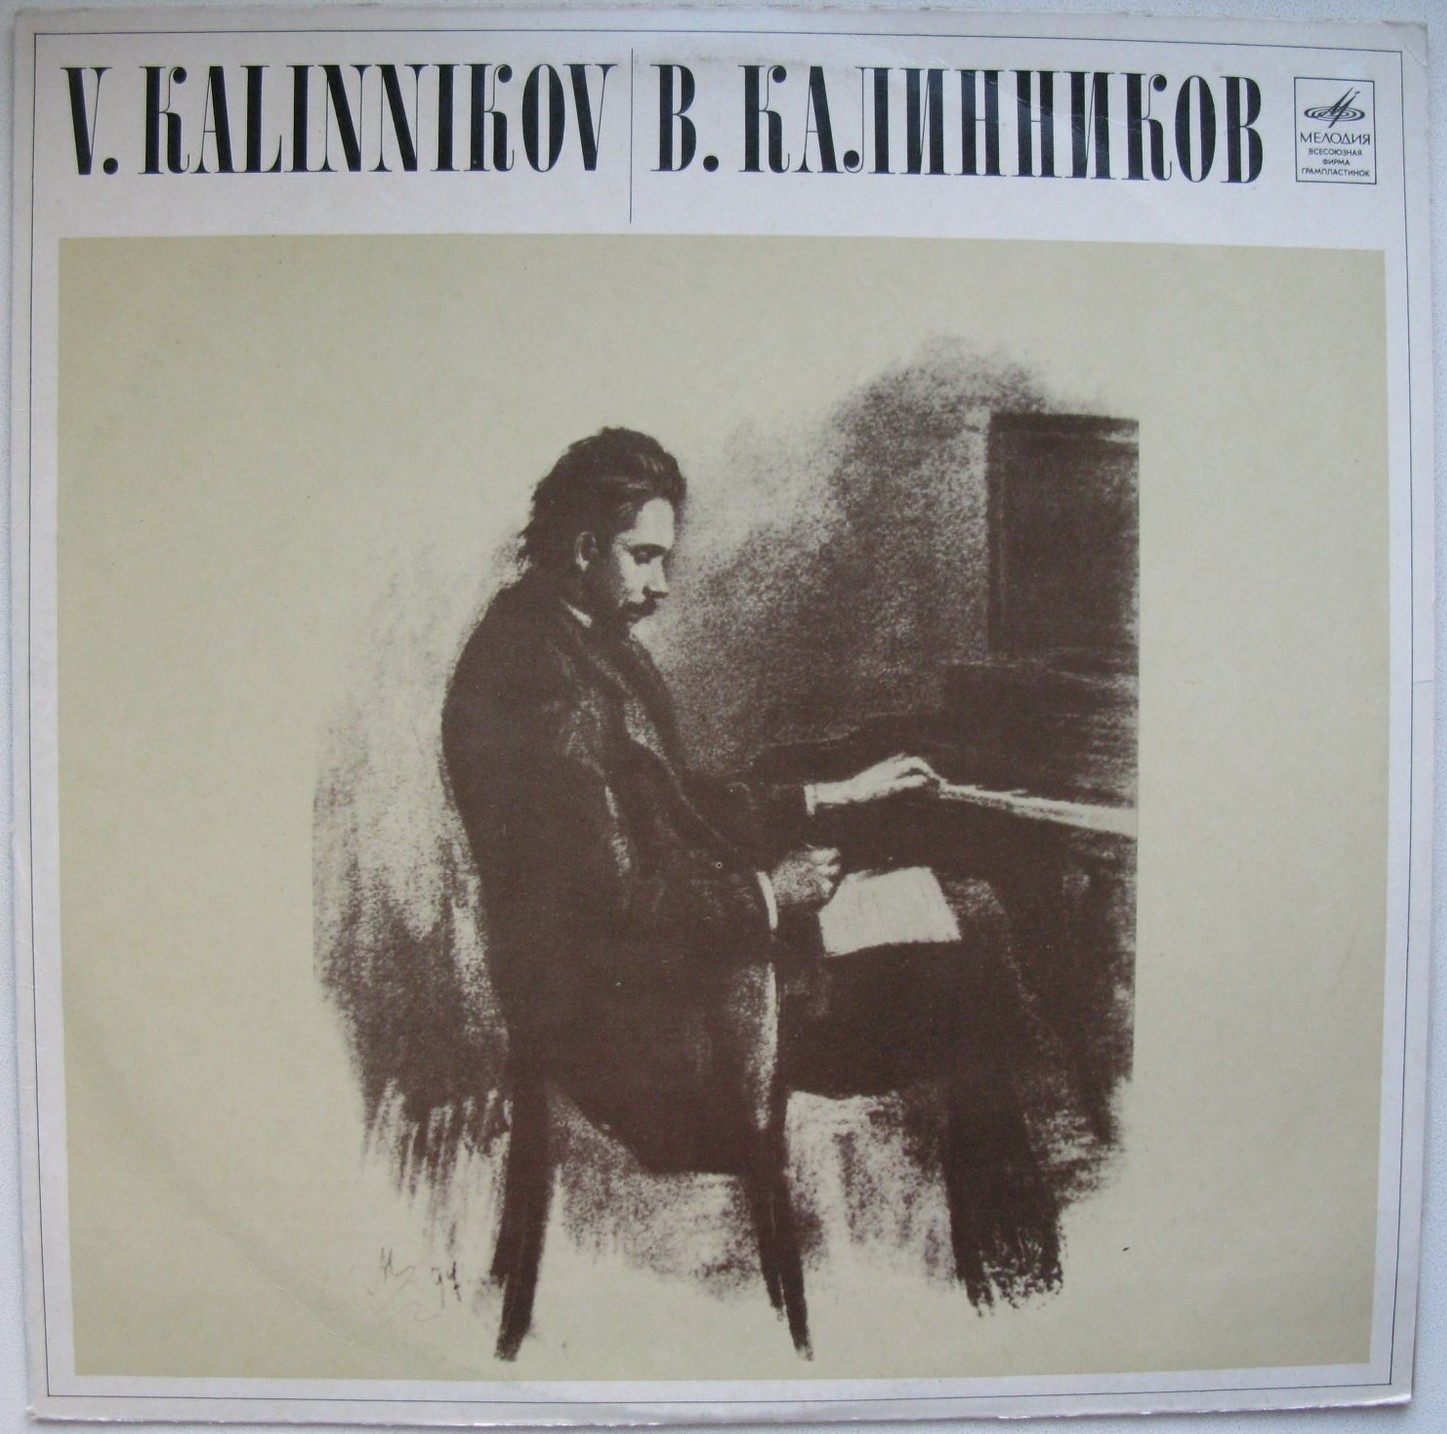 В. КАЛИННИКОВ (1866-1901) Симфония № 1 соль минор (К. Кондрашин)